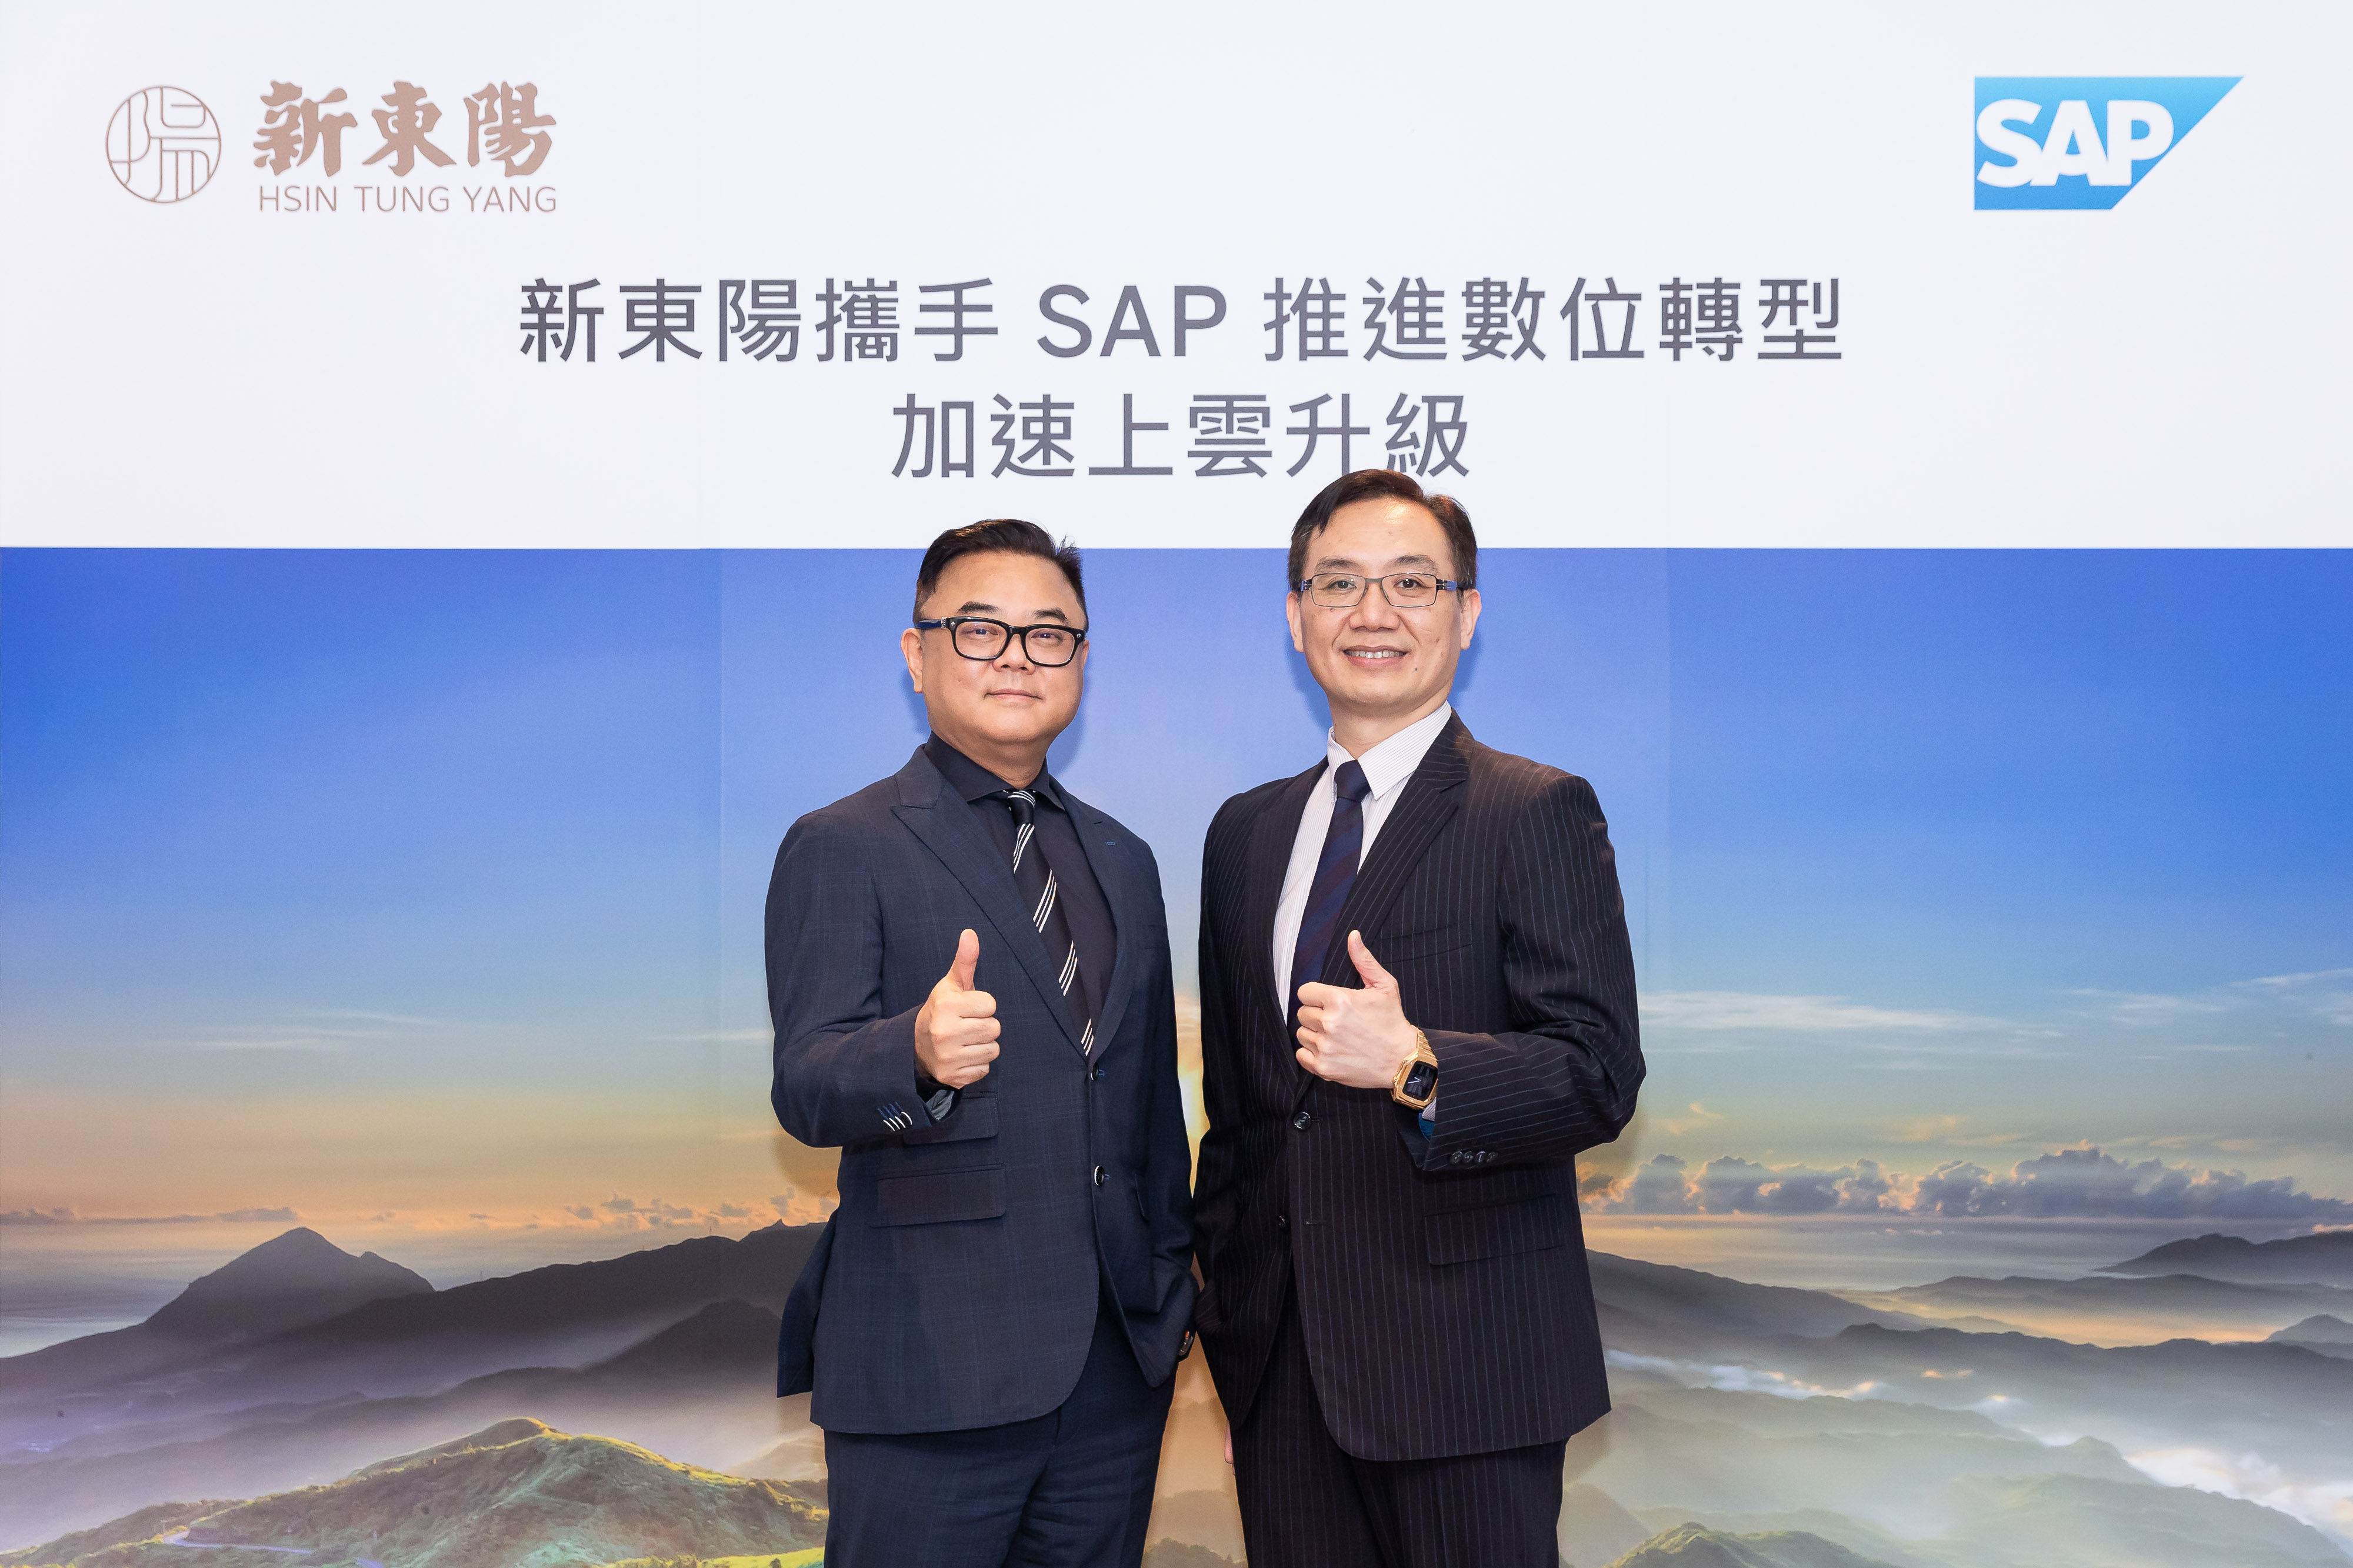 ▲▼新東陽導入 RISE with SAP，以 SAP S/4HANA 雲端 ERP 賦能數位核心，加速集團轉型升級。圖中由左而右為：新東陽董事/總經理麥升陽、SAP 全球副總裁、台灣總經理陳志惟。（圖／SAP提供）